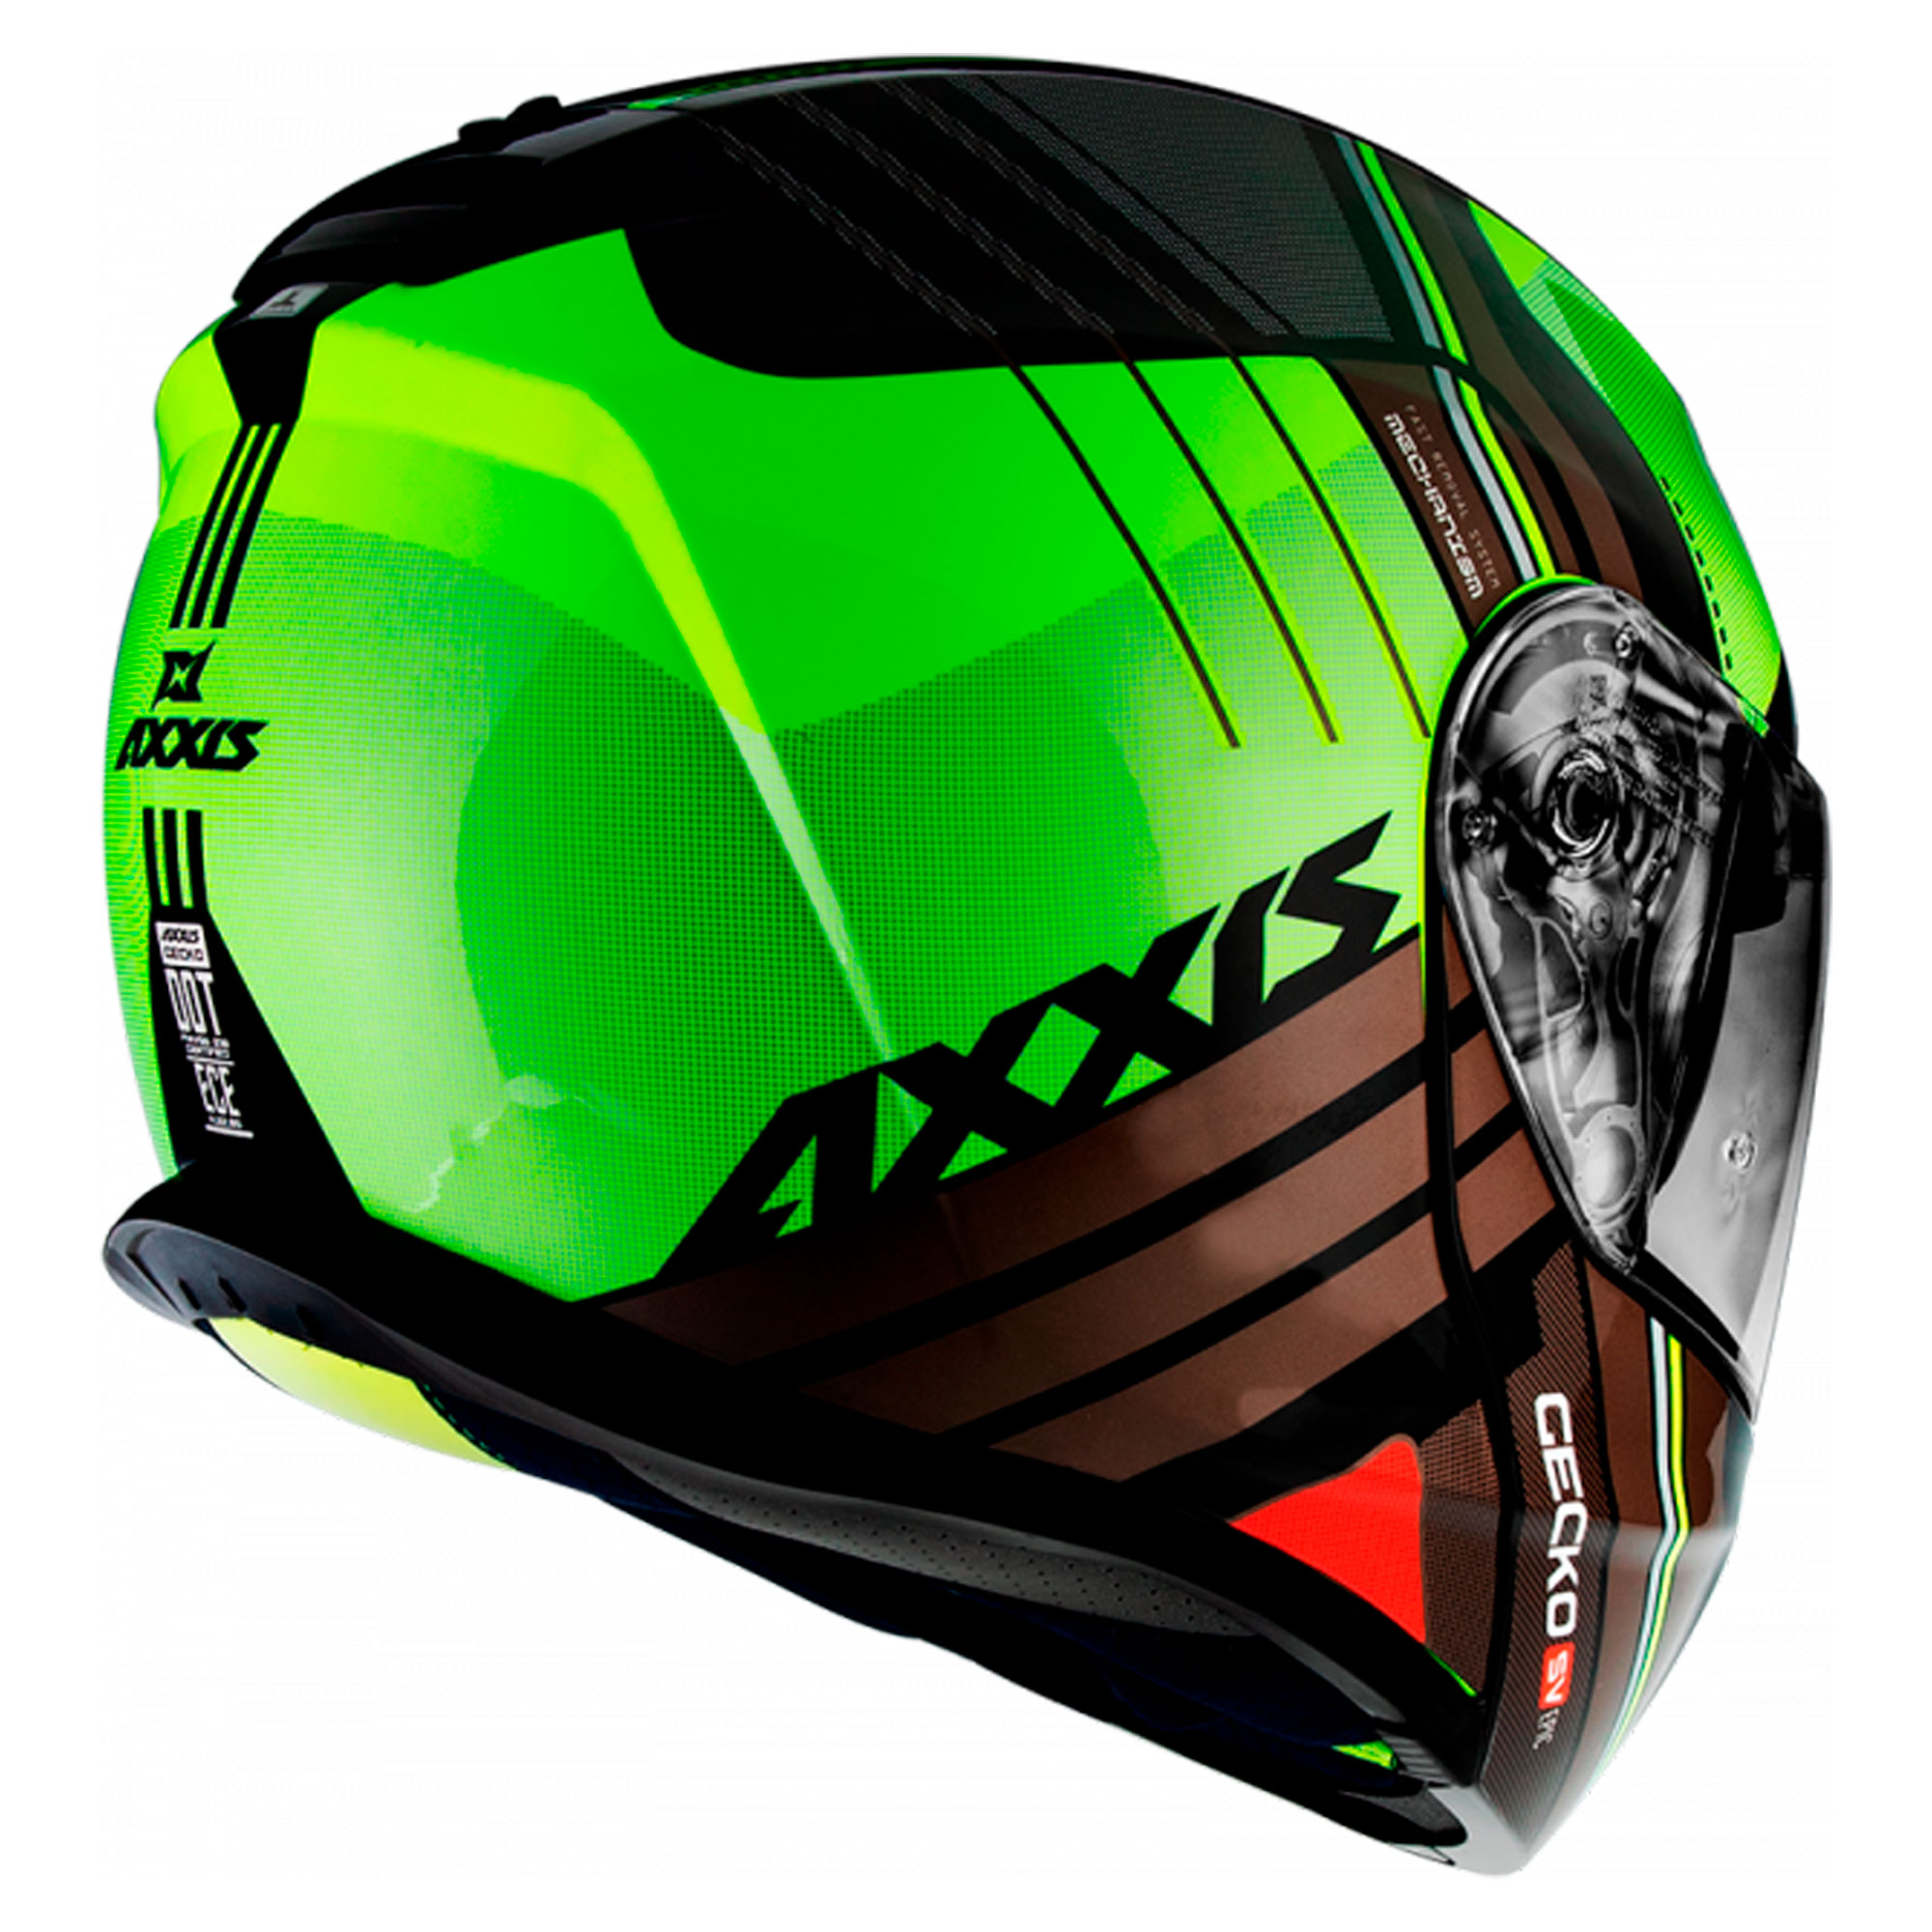 Adhesivos reflectantes para casco Gecko – Moto, scooter, quad part